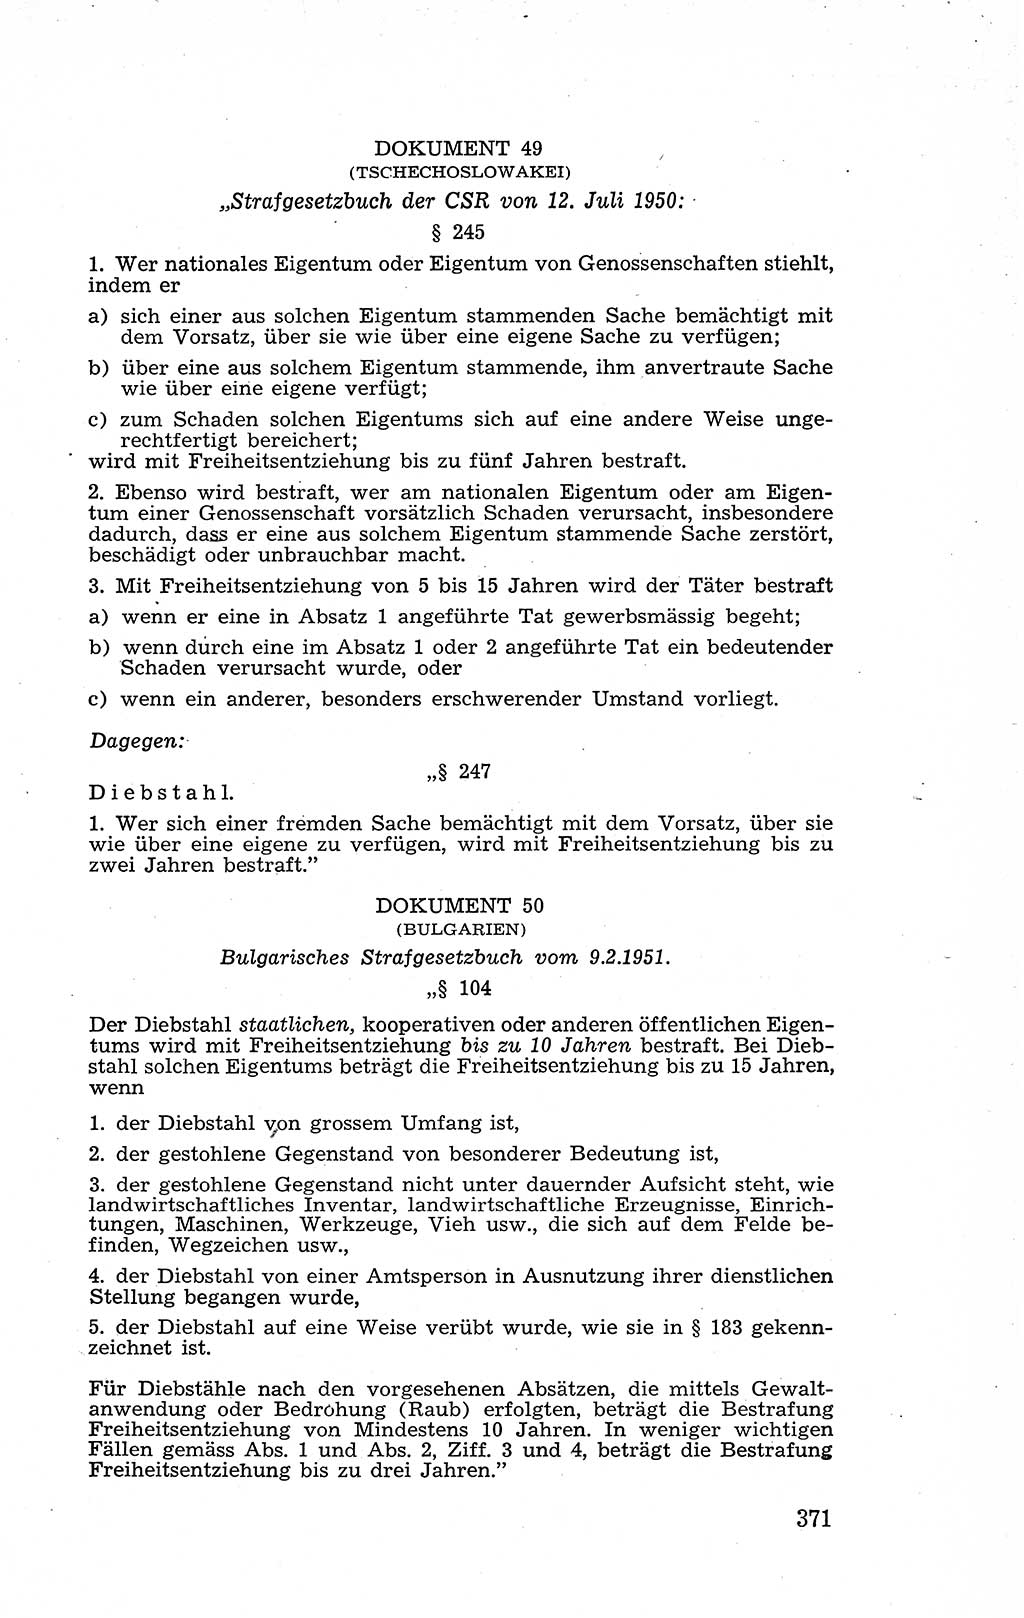 Recht in Fesseln, Dokumente, Internationale Juristen-Kommission [Bundesrepublik Deutschland (BRD)] 1955, Seite 371 (R. Dok. IJK BRD 1955, S. 371)